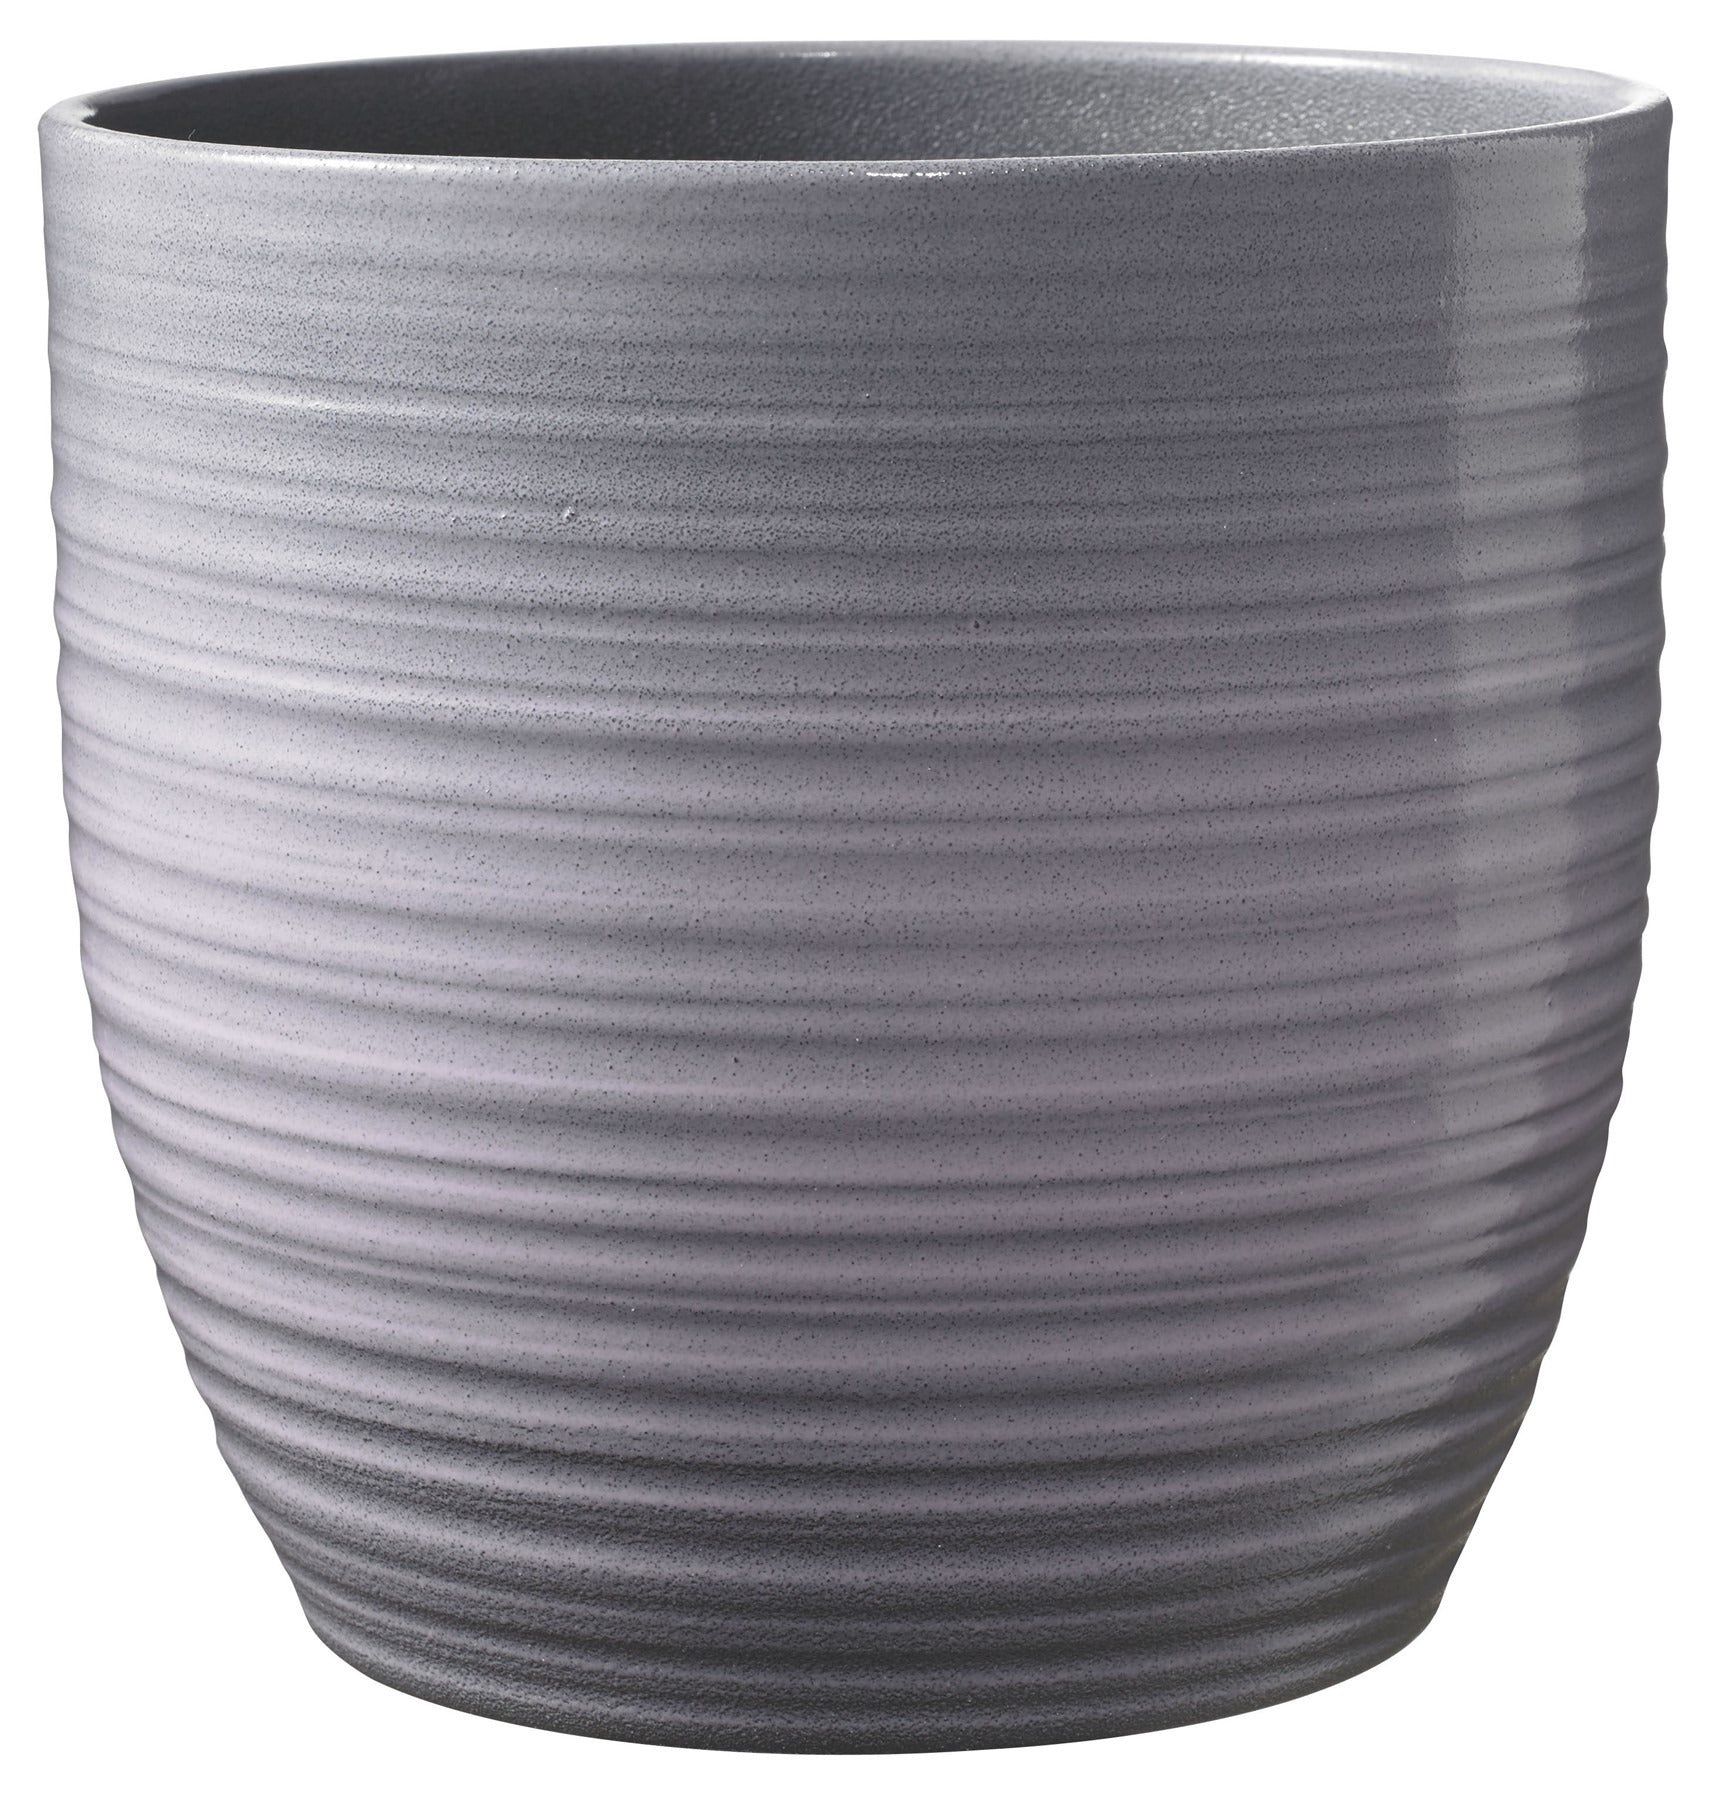 View Bergamo Ceramic Pot Lavender Glaze 14cm information